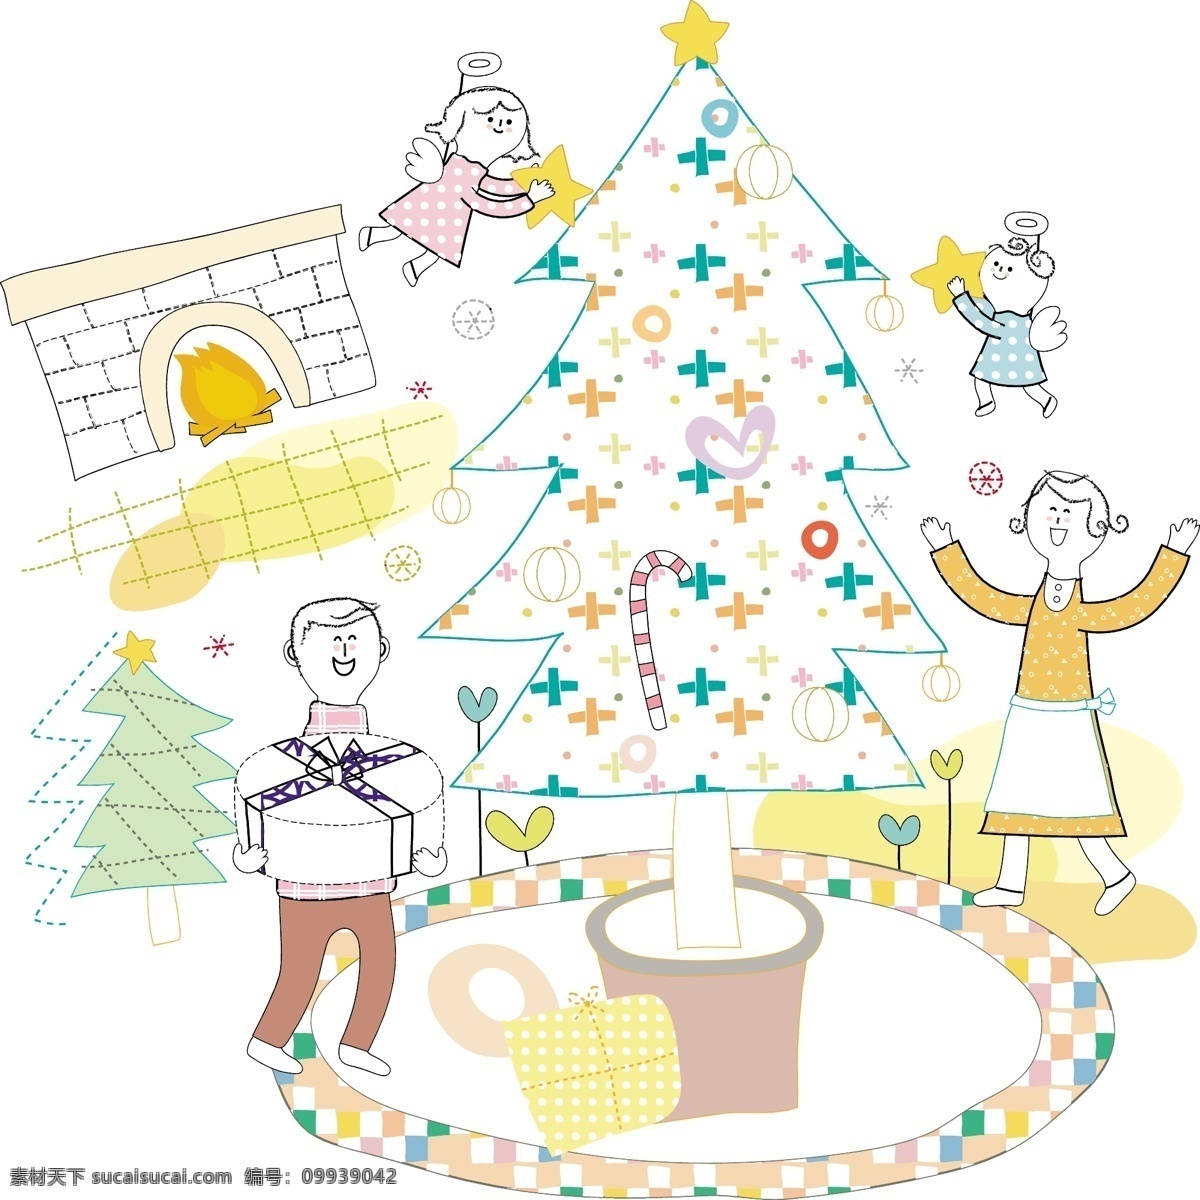 圣诞树 幸福 家庭 插画 psd素材 壁炉 节日 圣诞节 幸福家庭 psd源文件